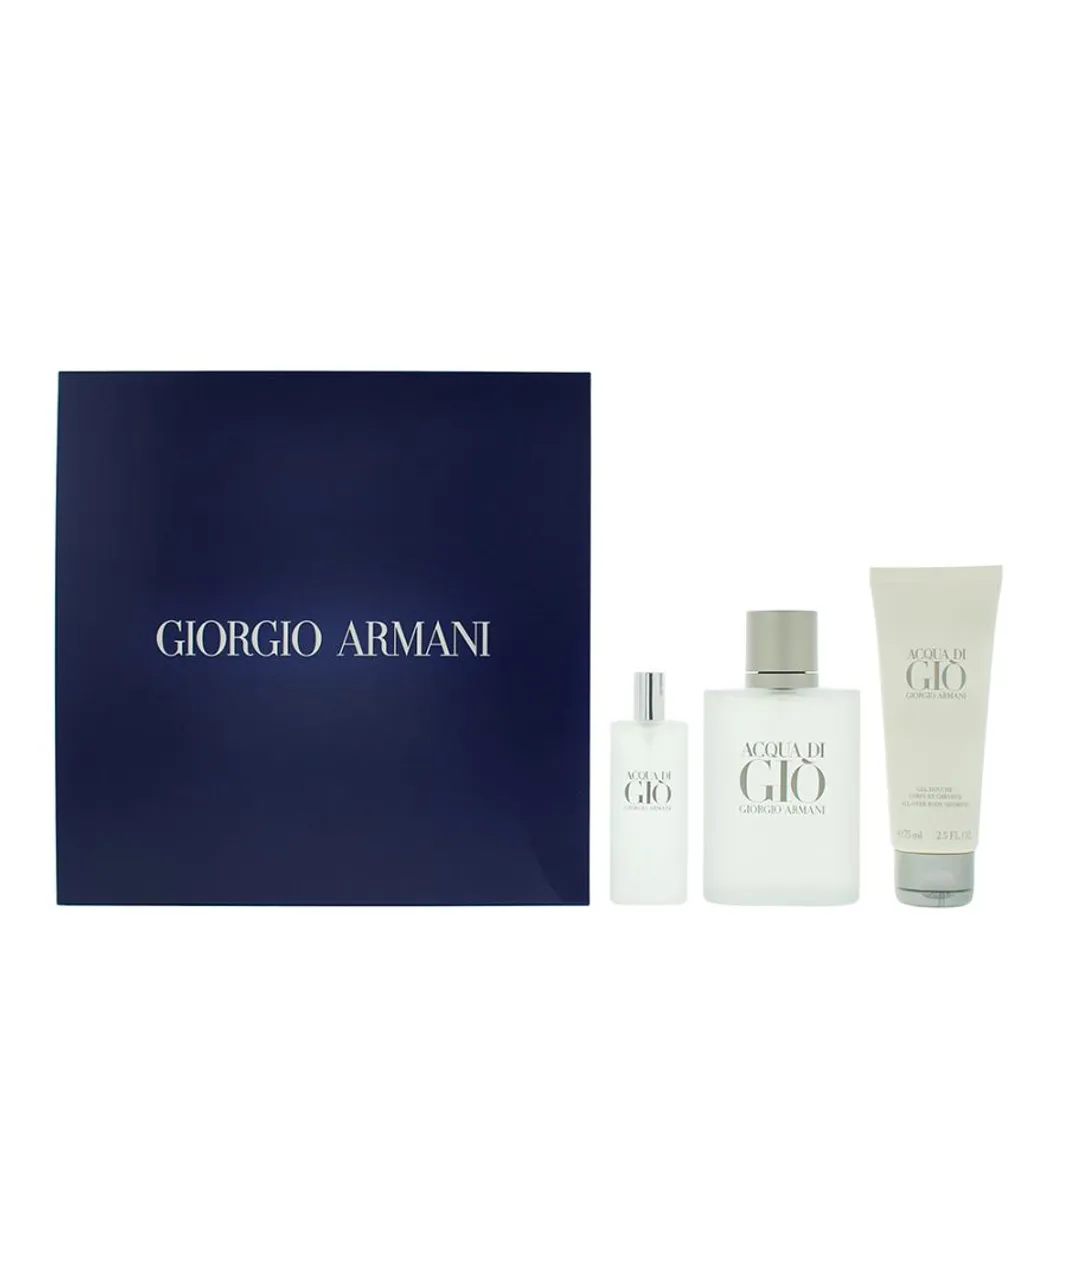 Giorgio Armani Mens Acqua Di Gio Eau De Toilette 100ml + 15ml + Shower Gel Gift Set - NA - One Size